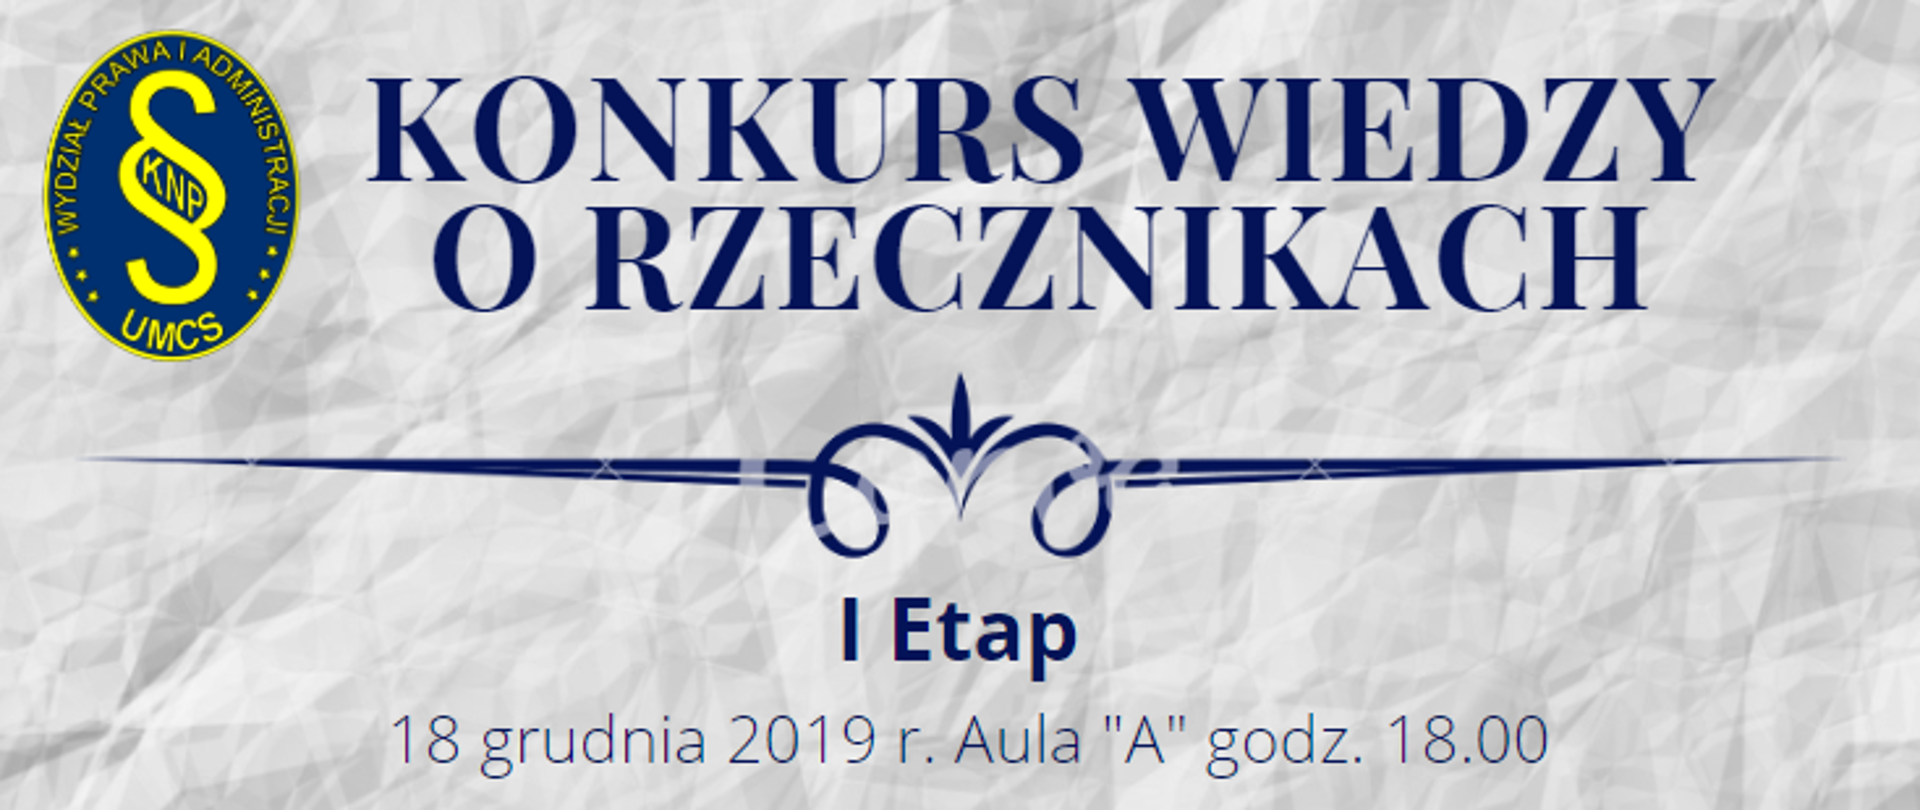 Konkurs Wiedzy o Rzecznikach organizowany przez Studenckie Koło Naukowe Prawników Uniwersytetu Marii Curie-Skłodowskiej w Lublinie